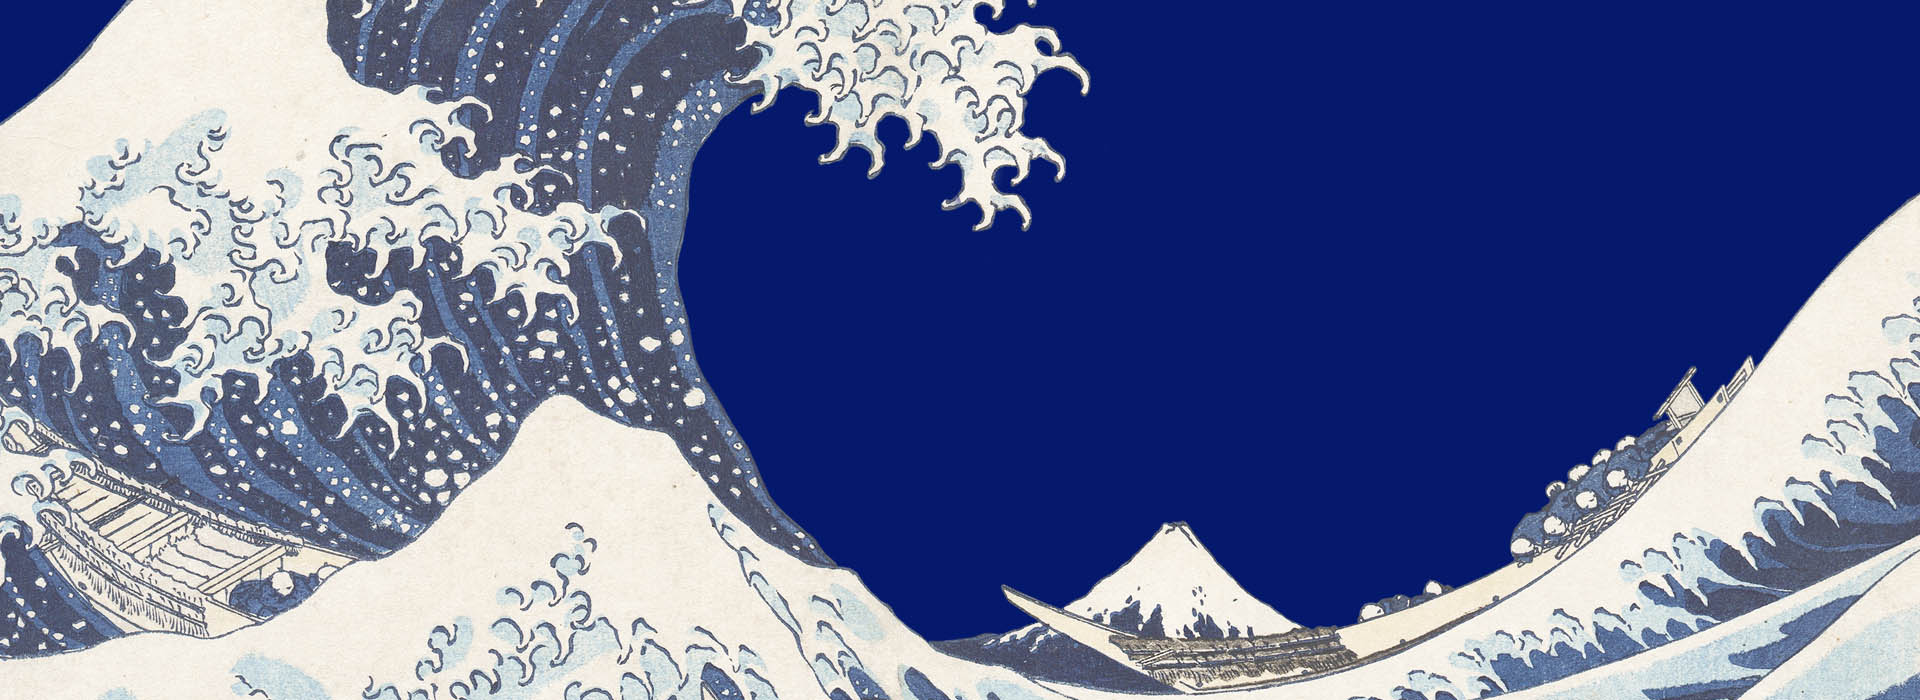 Hokusai, Hiroshige. Beyond the wave